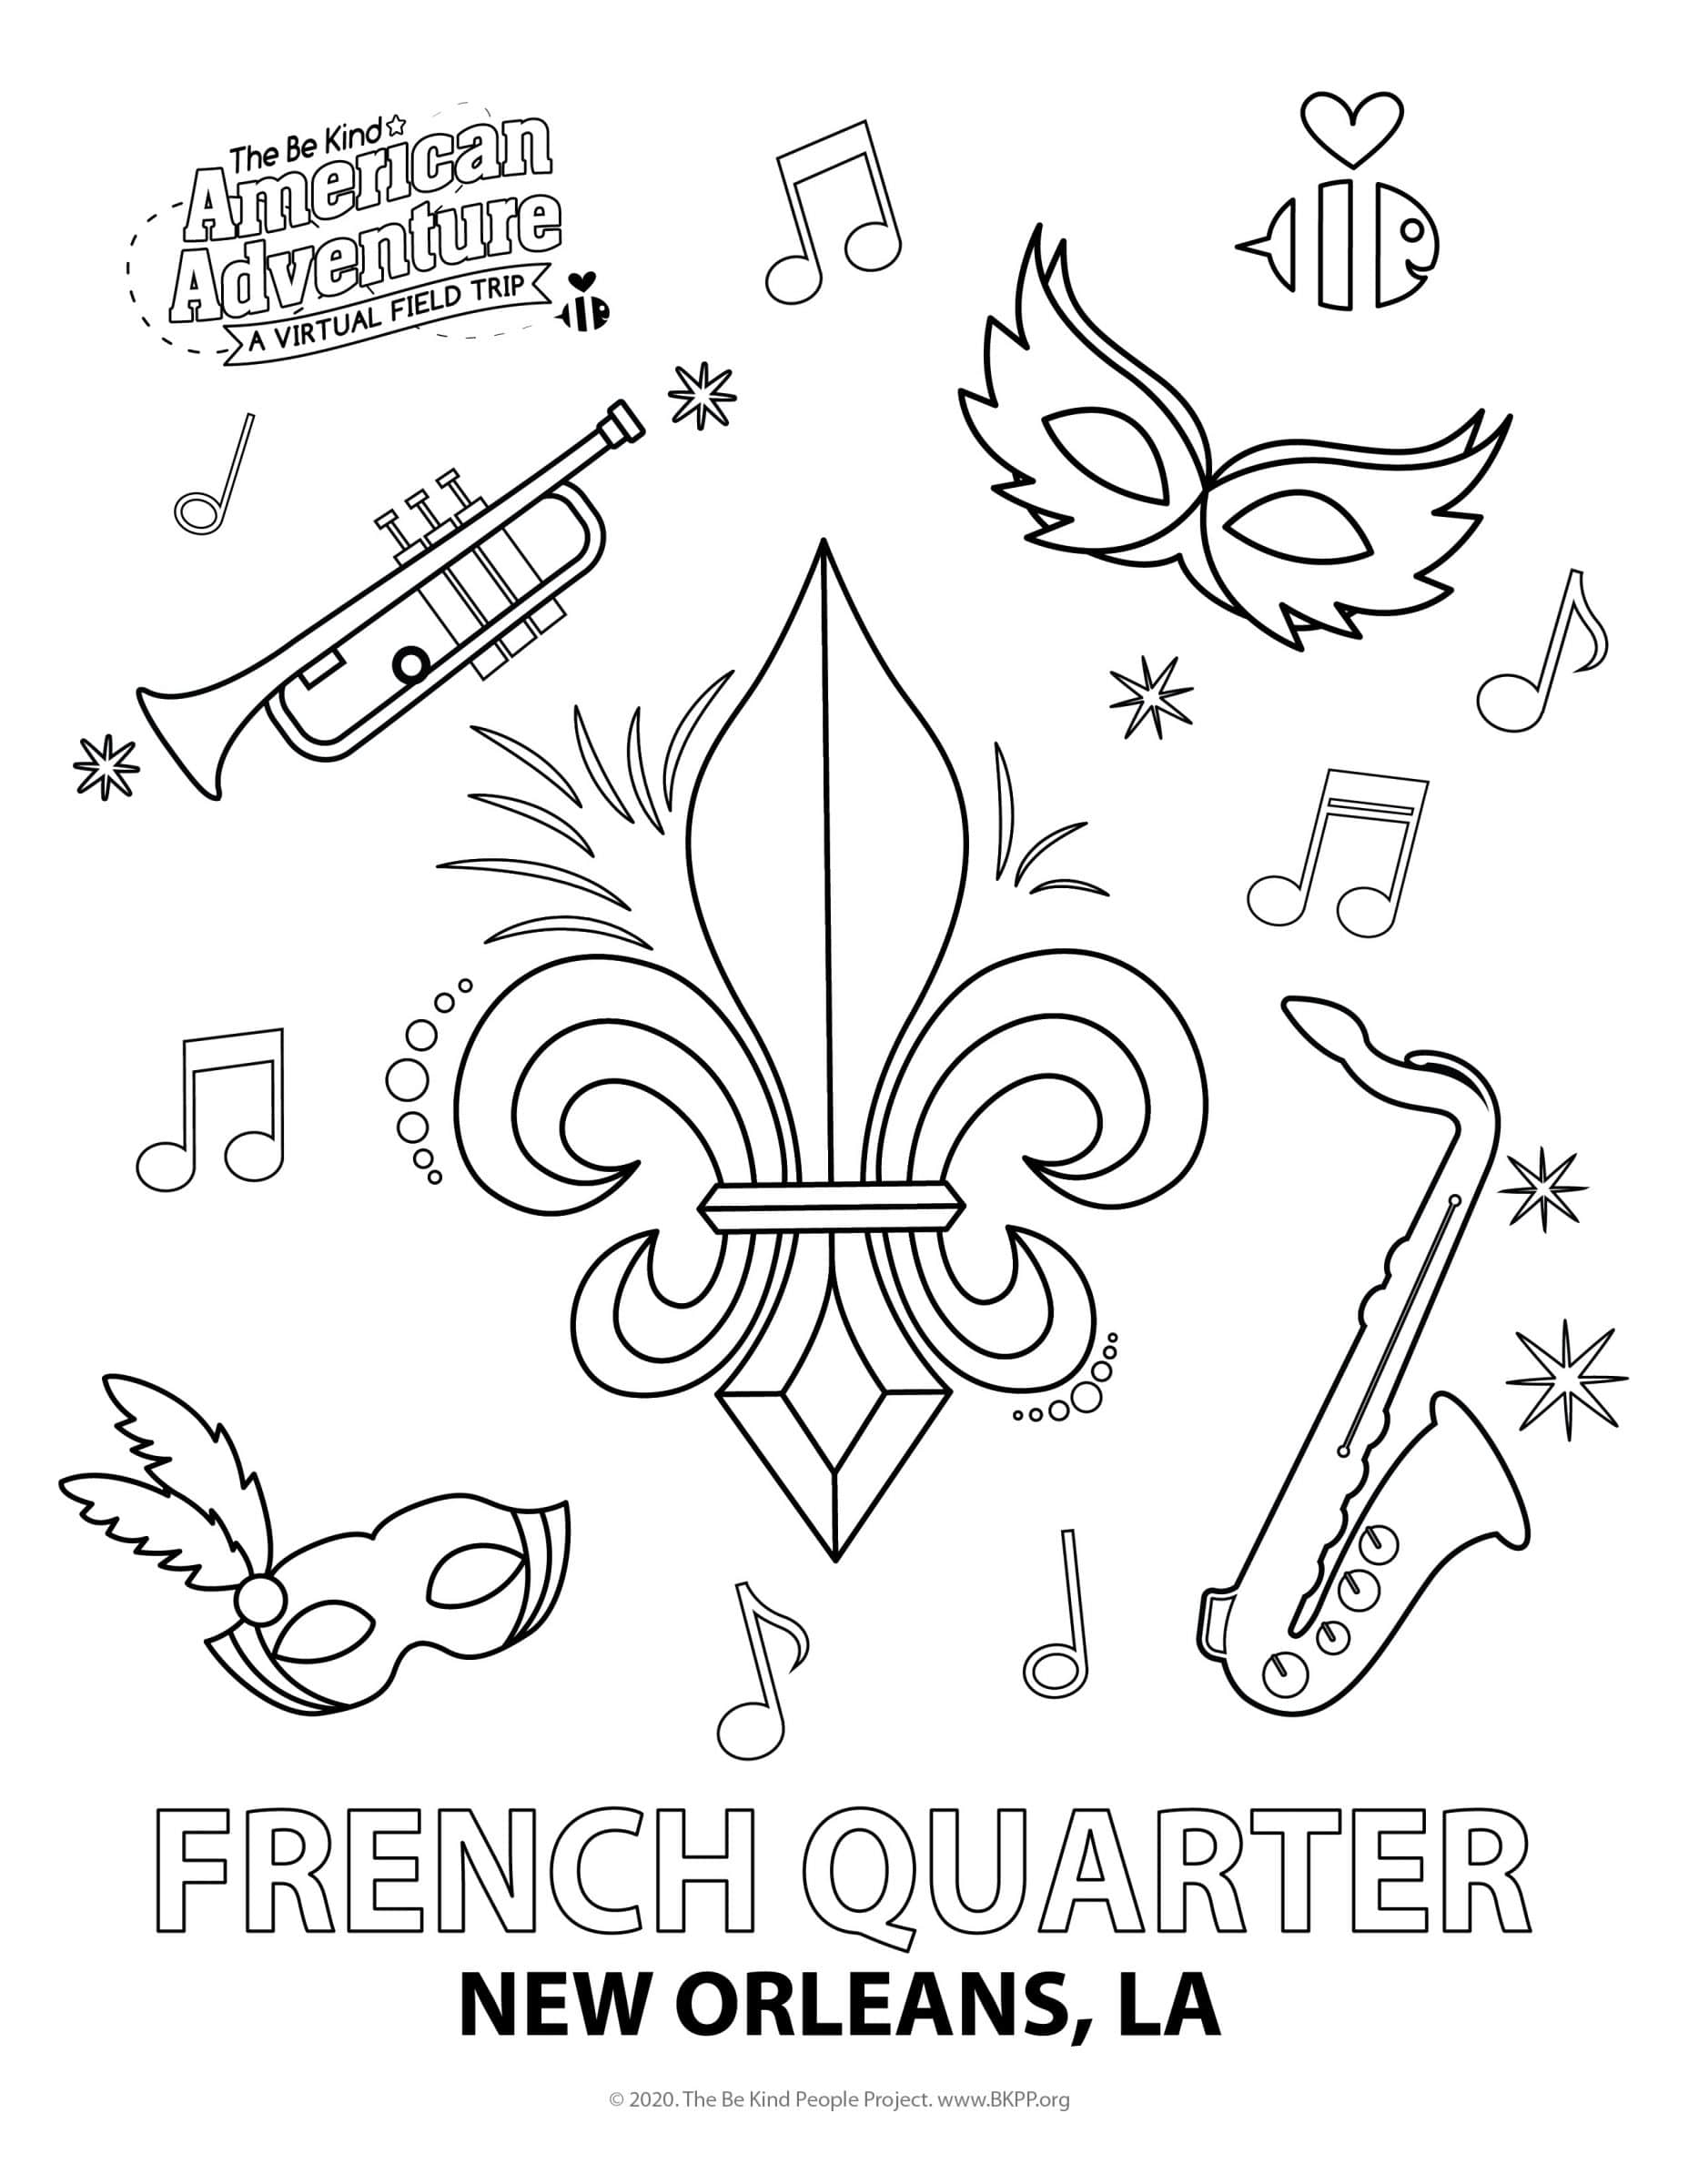 French quarter